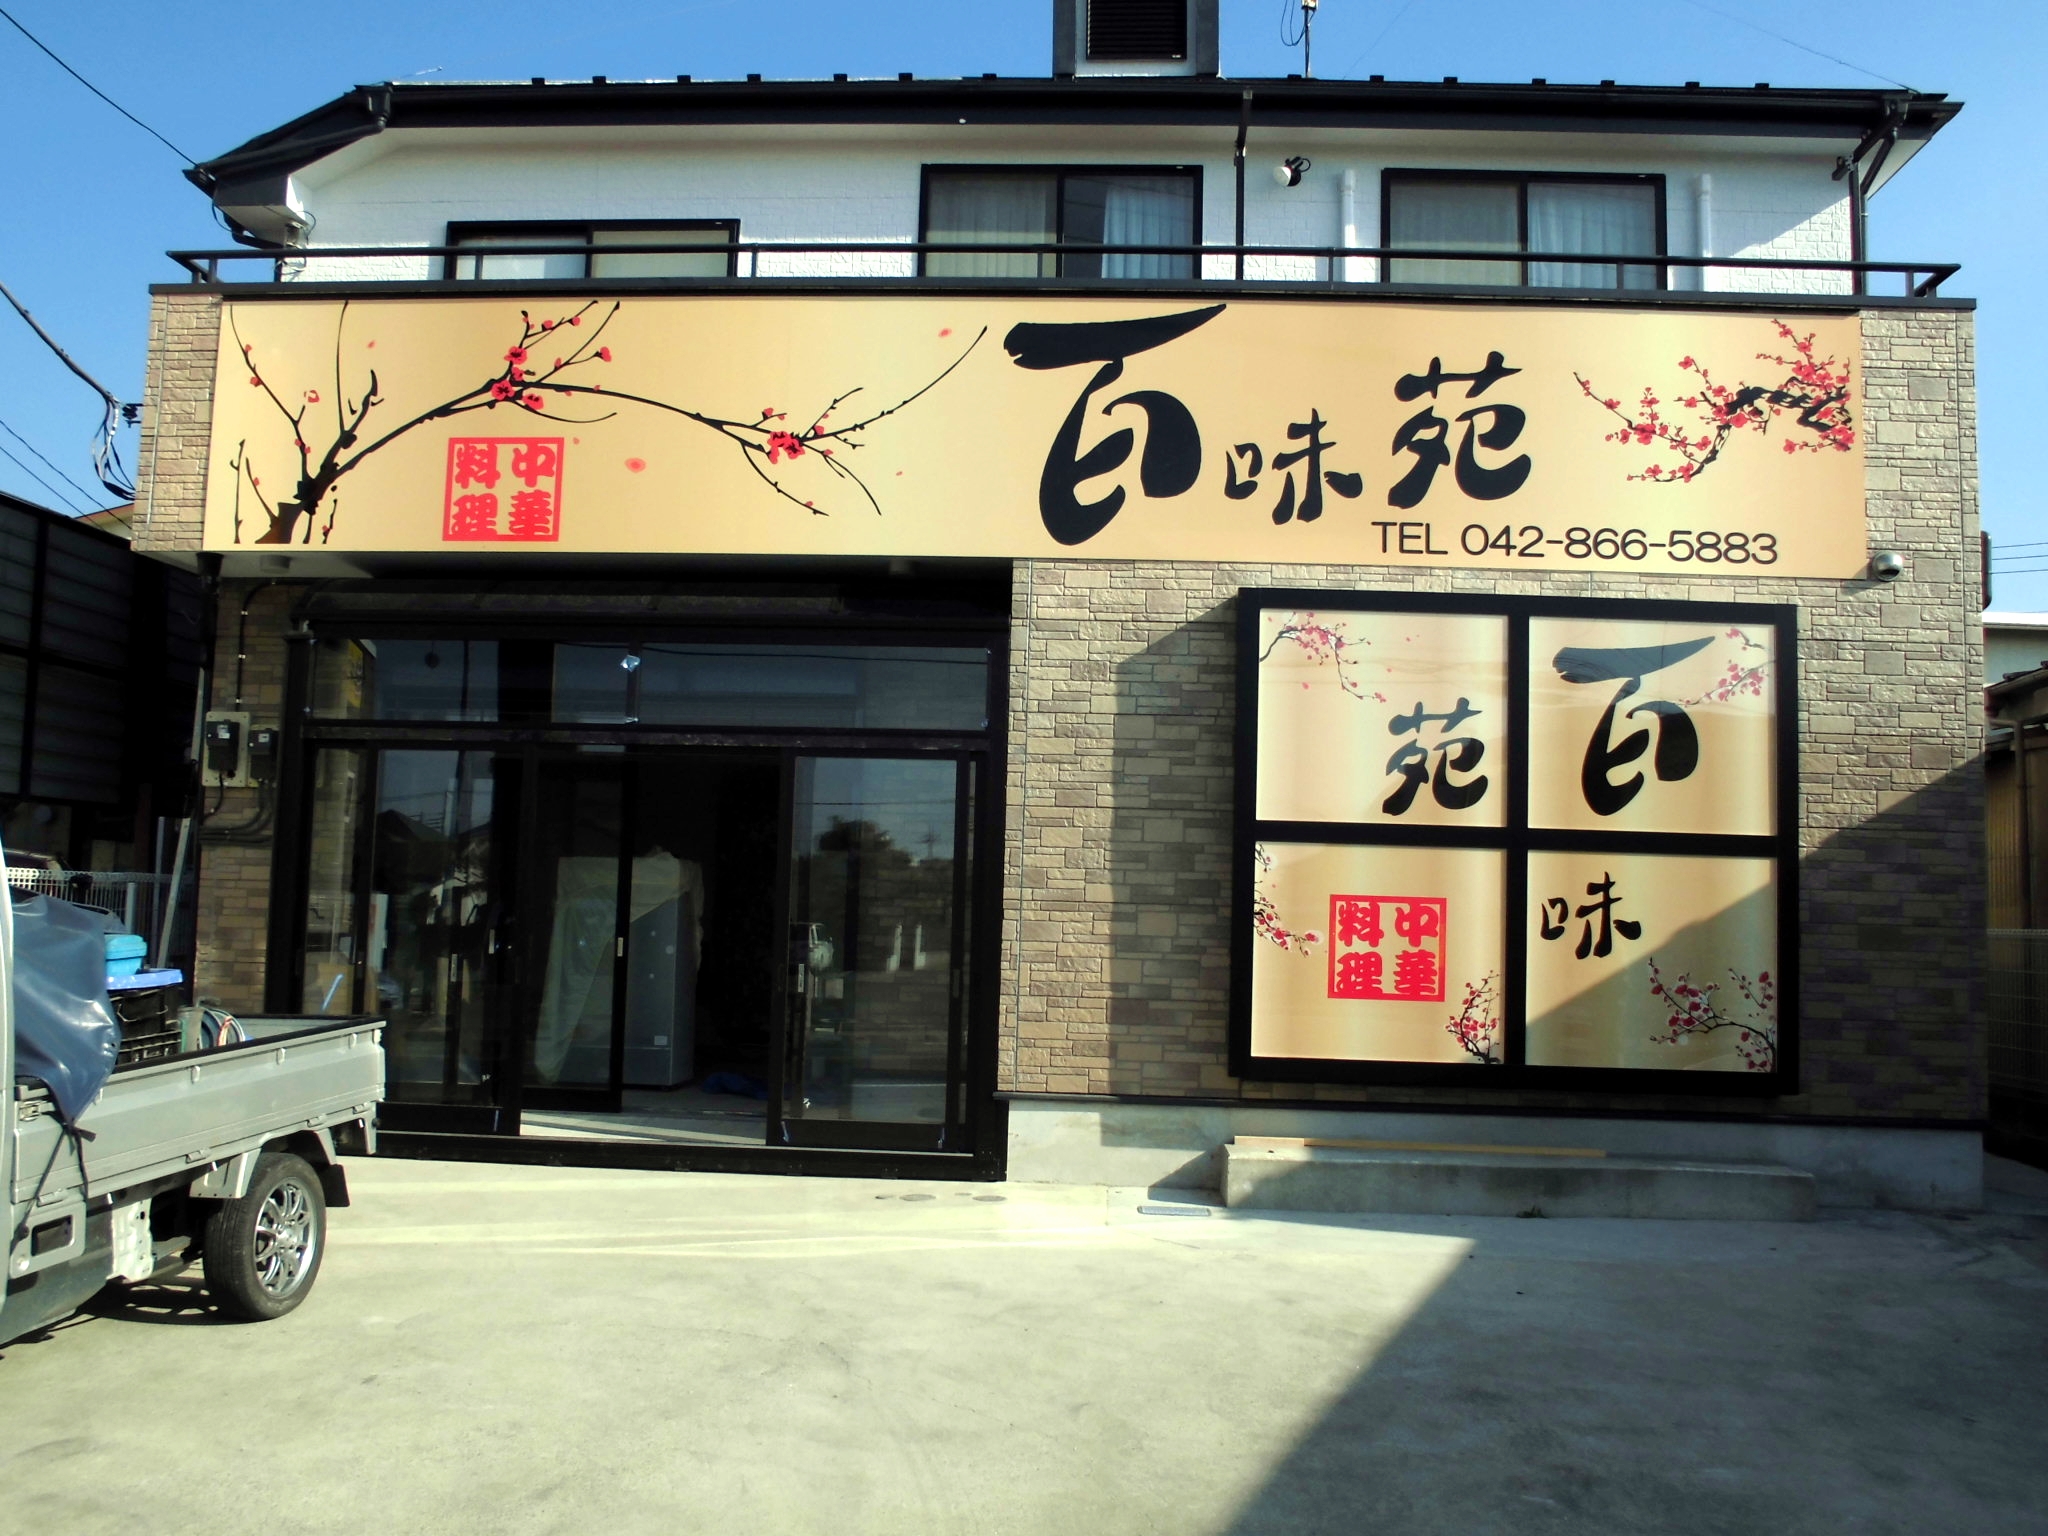 町田の木曽に開店した中国料理のお店『百味苑』様の看板製作・設置工事です。